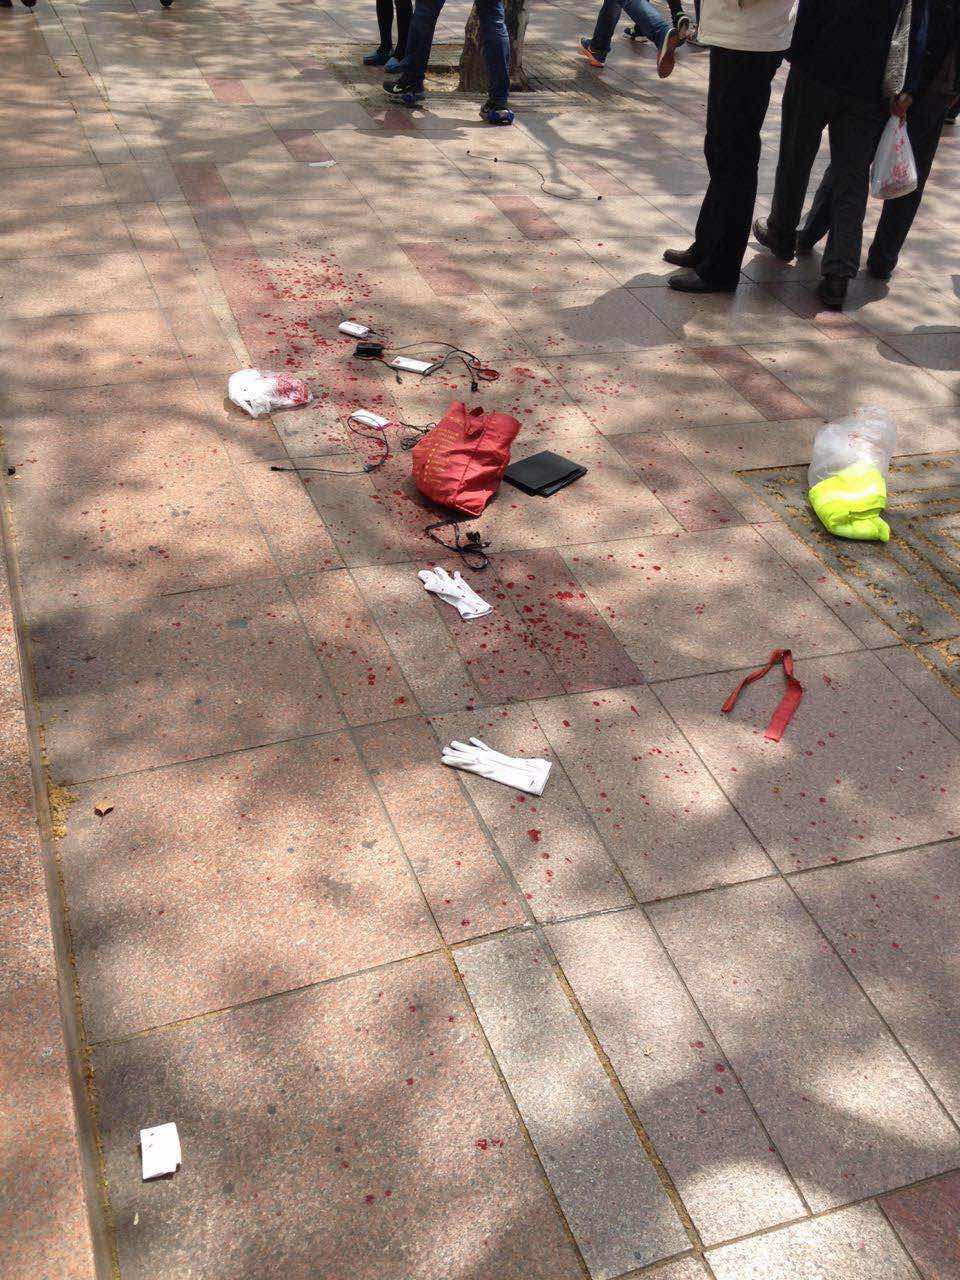 上海南京东路步行街持刀砍人者被制服过程曝光